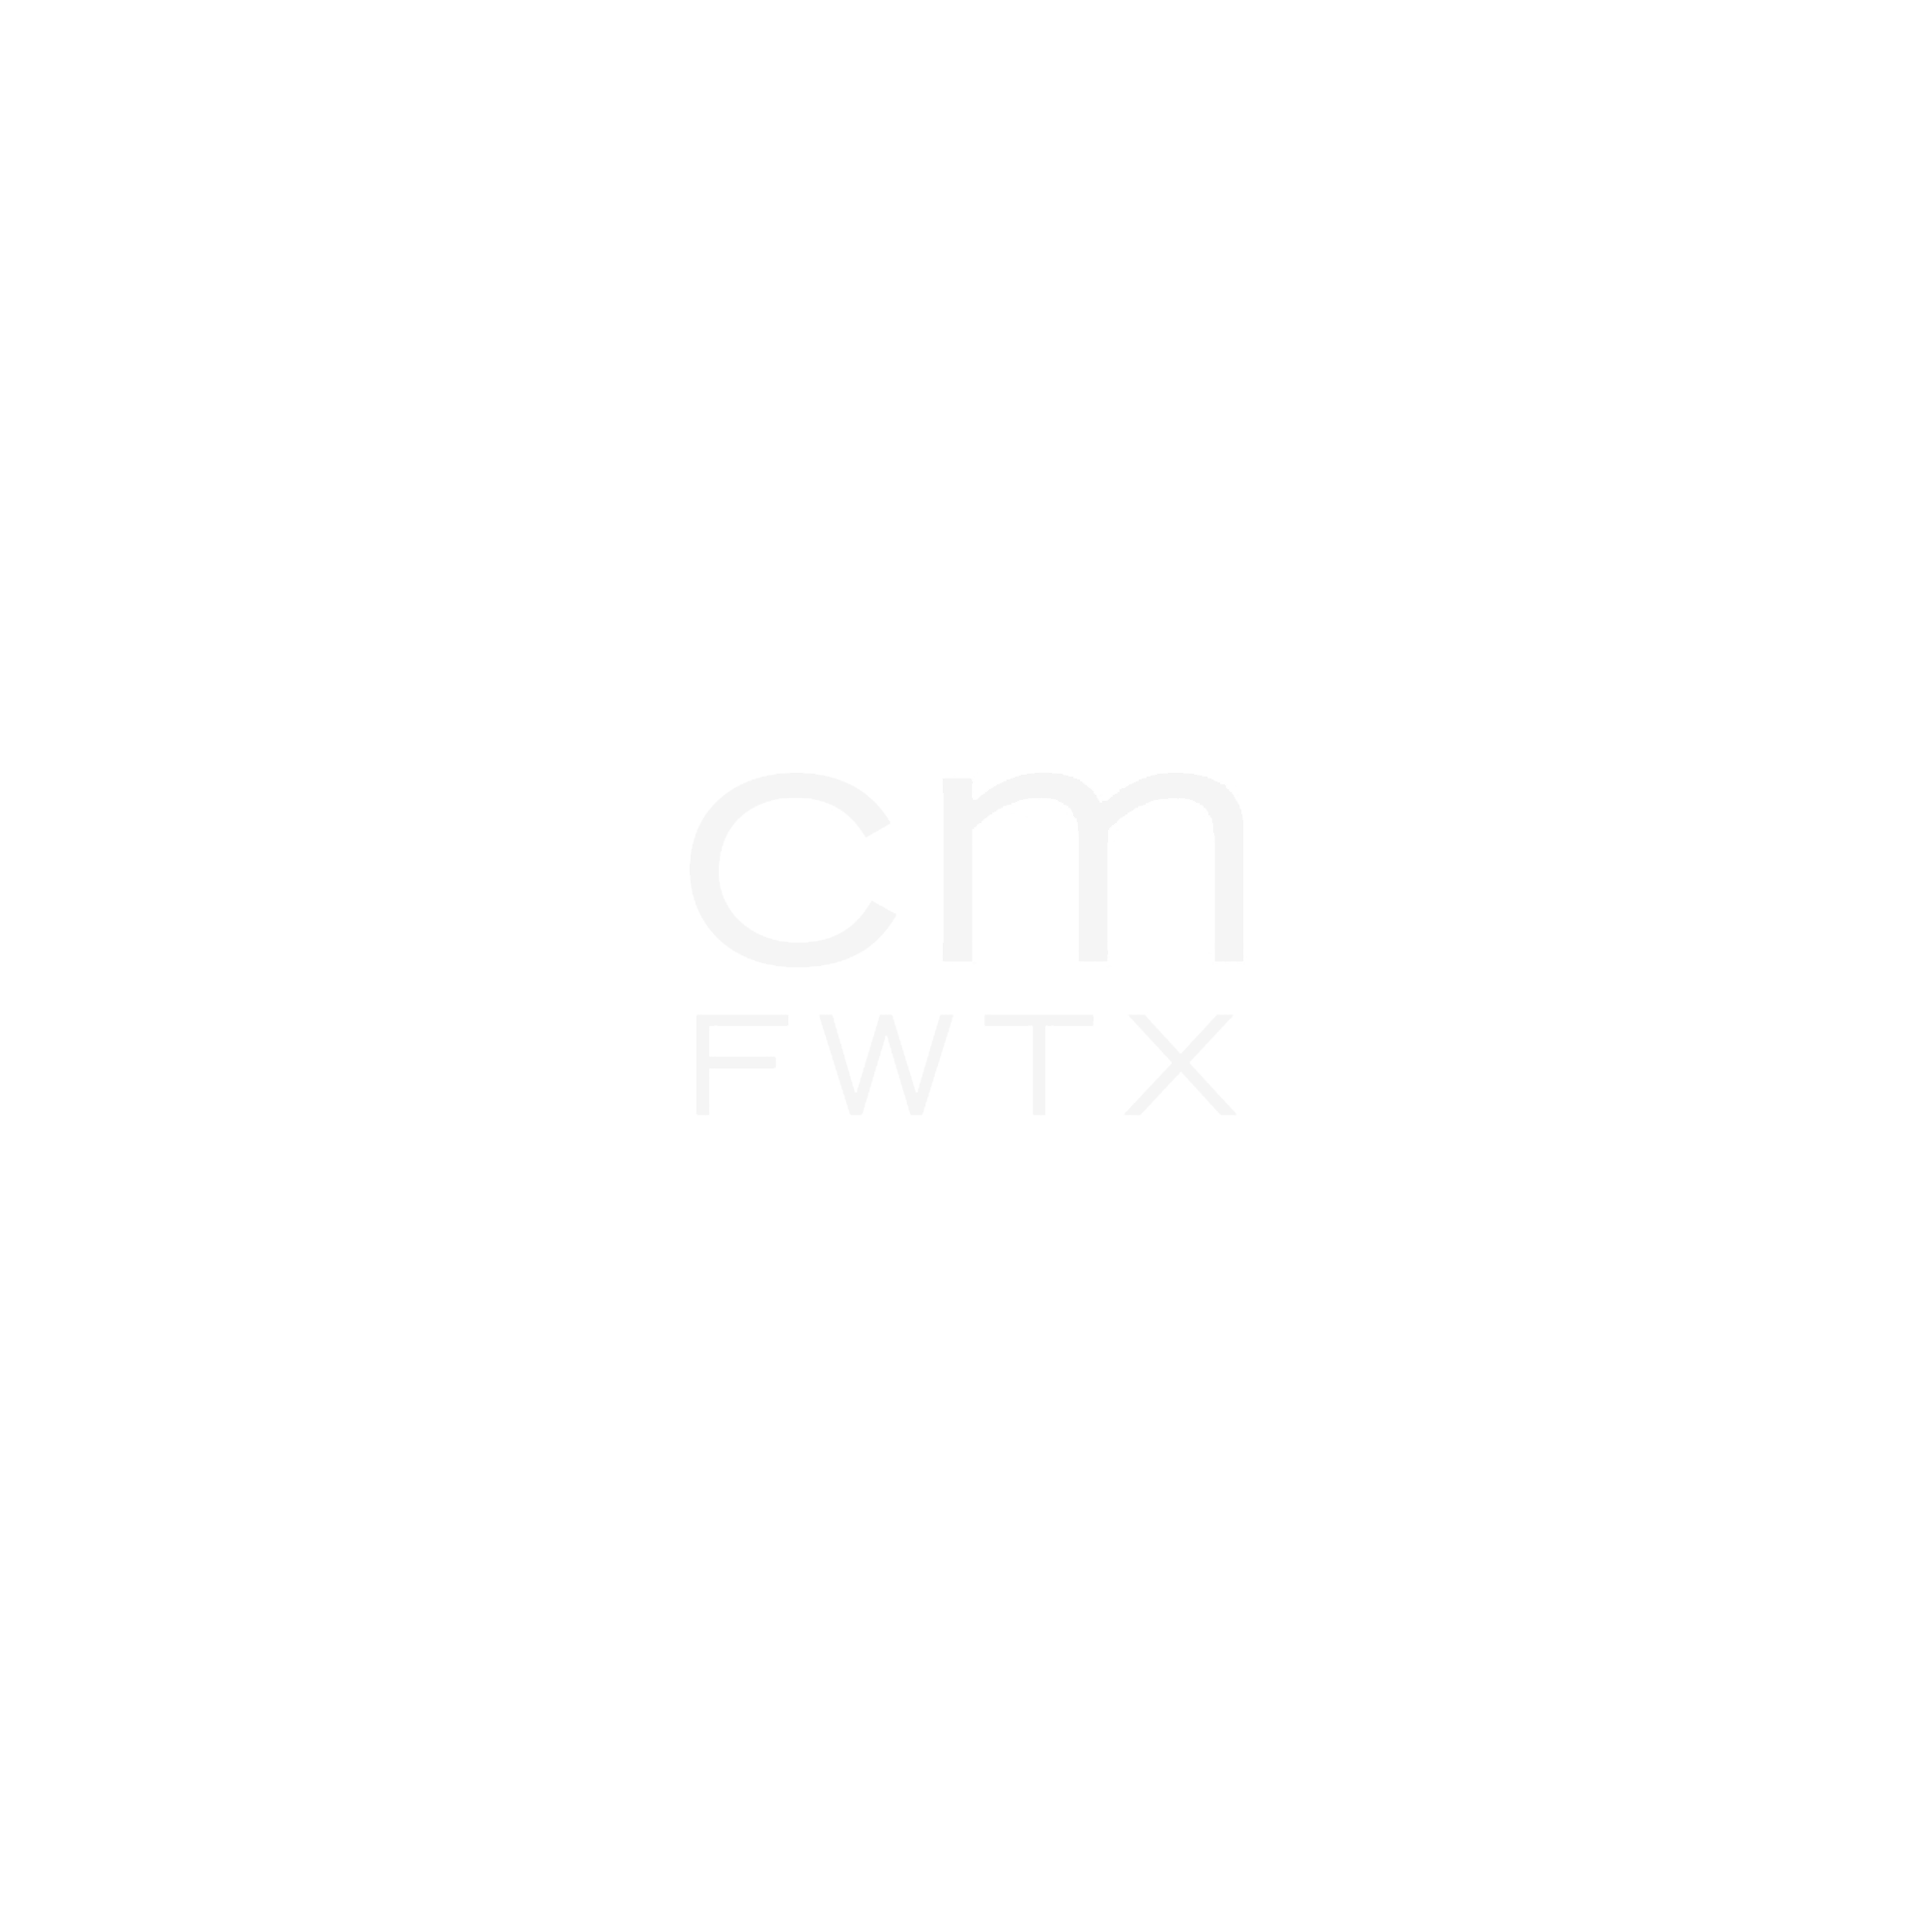 CMFWTX.png